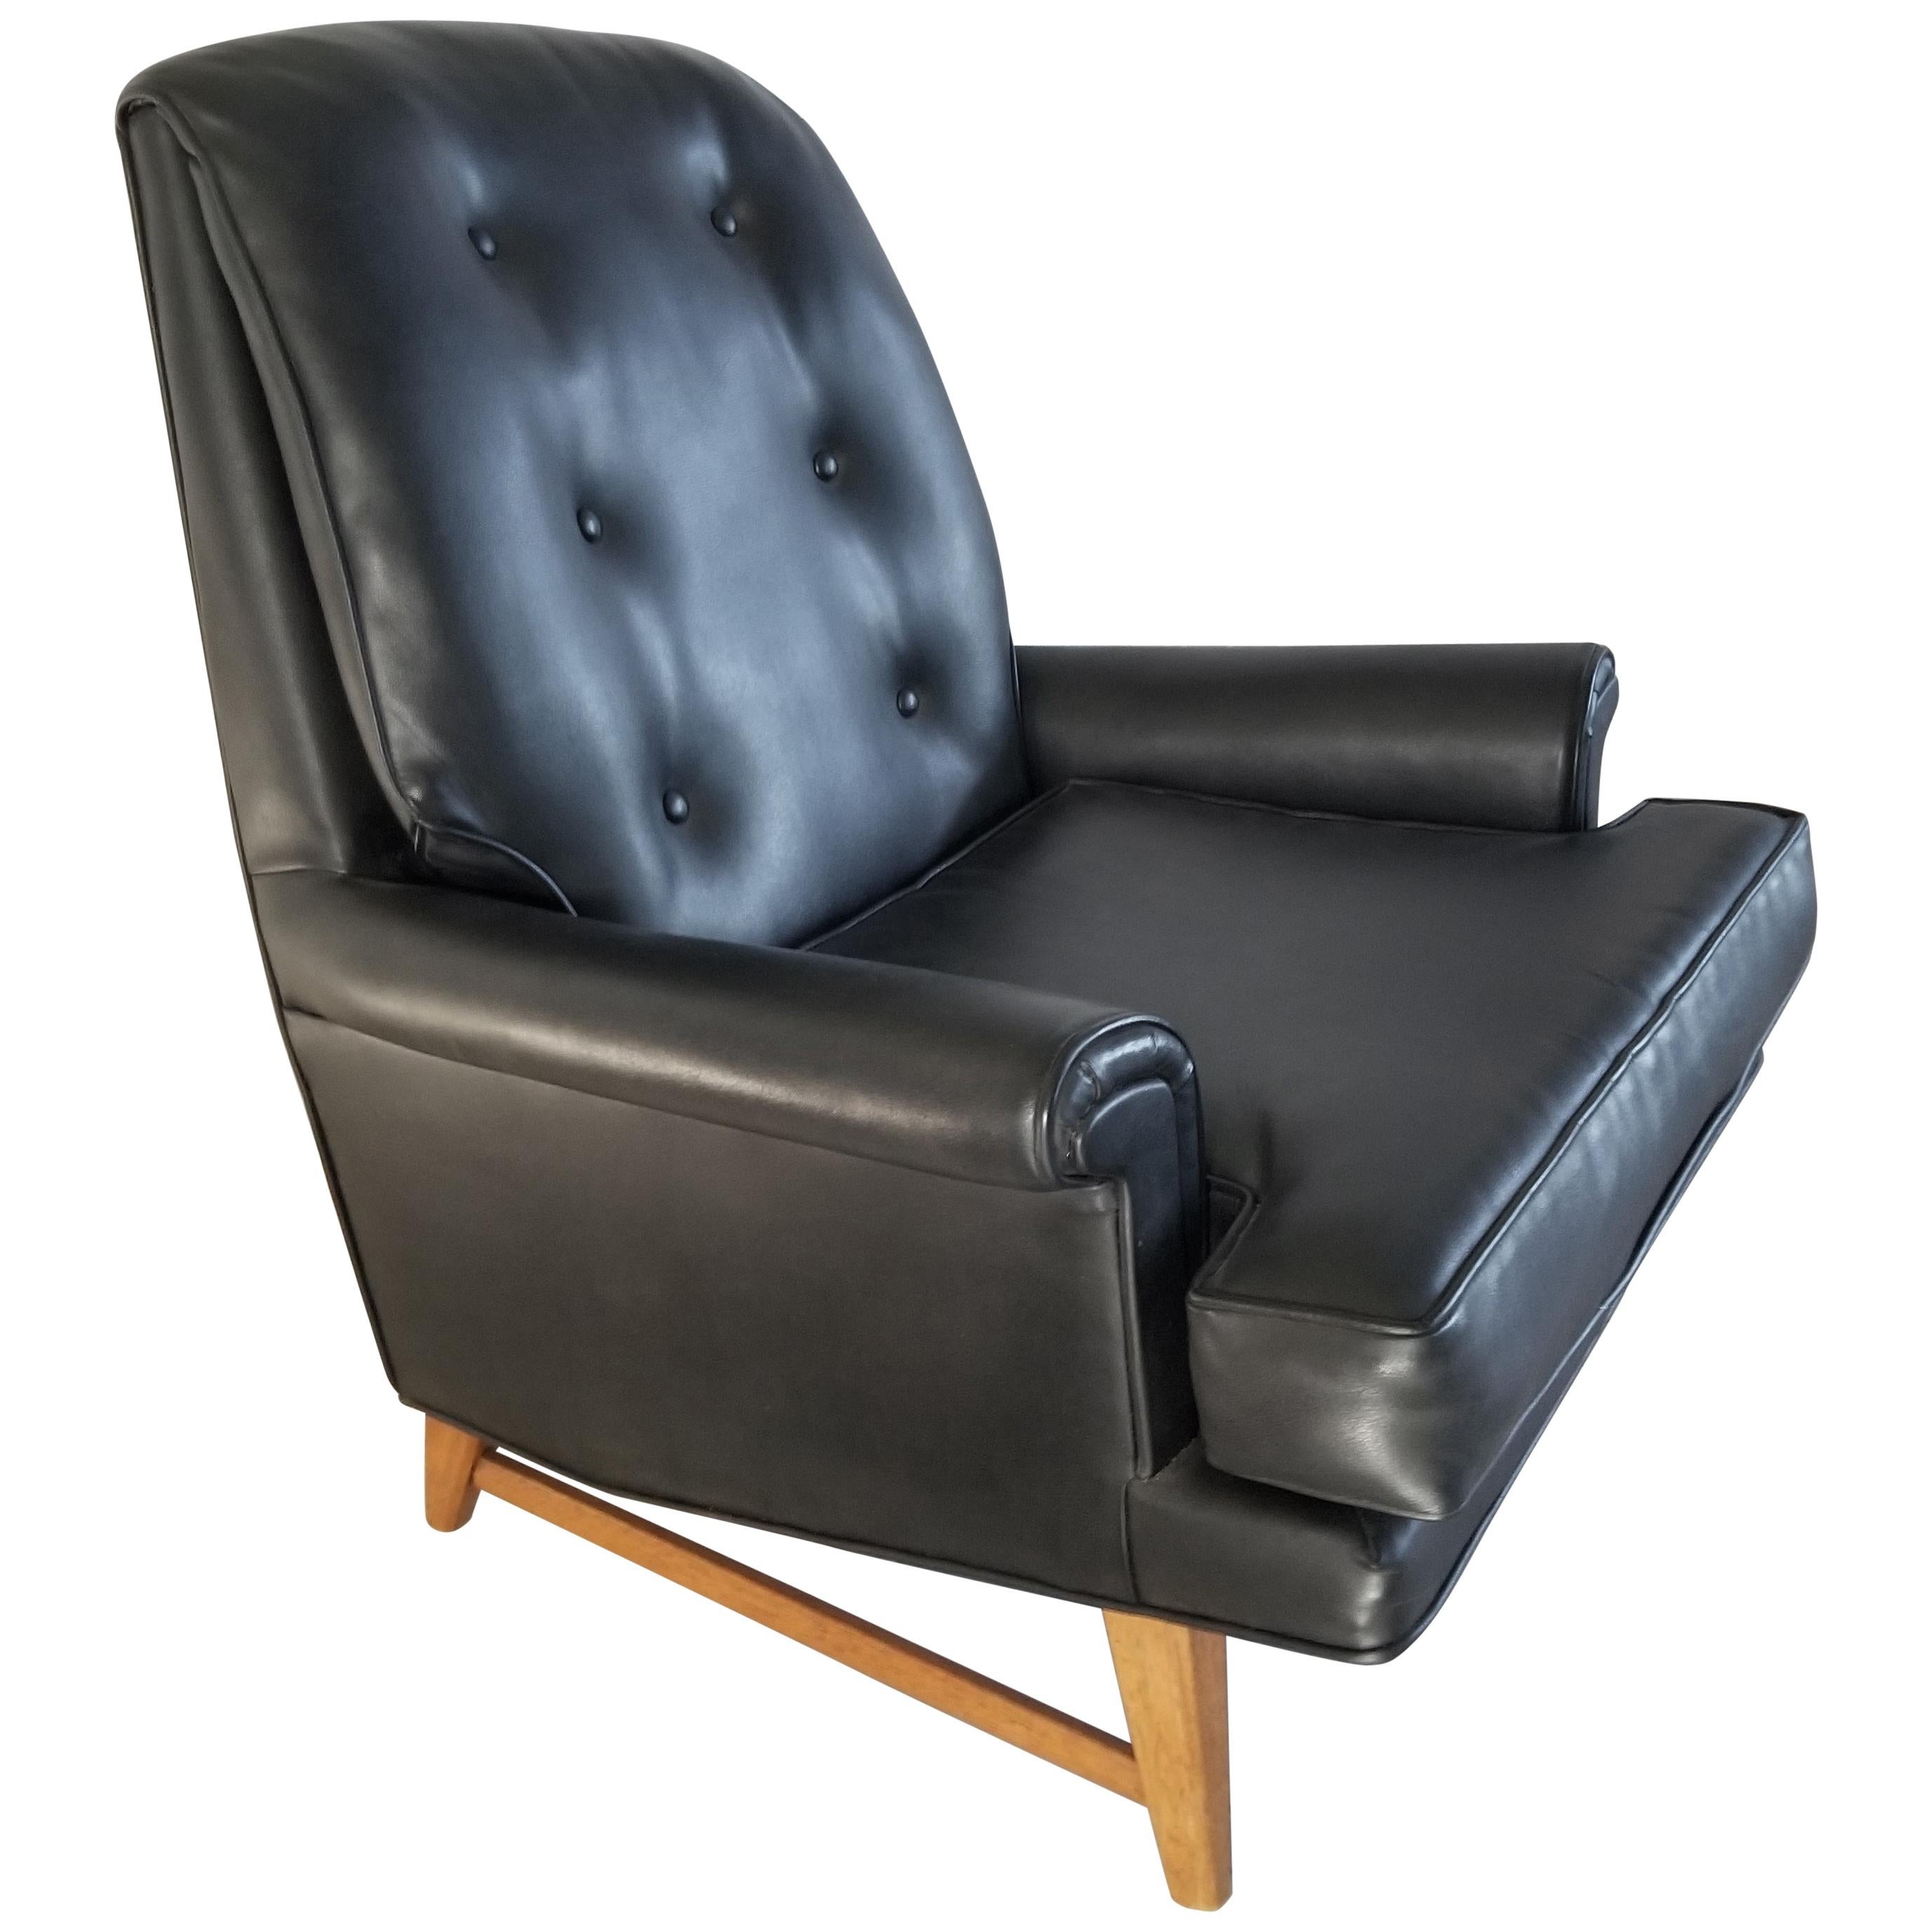 Handsome Heritage Chaise longue en simili-cuir noir 
Edward Wormley pour Dunbar Furniture Era Classic 1950s
Faux cuir qui ressemble vraiment à du cuir.
Confort et esthétique sur un socle en bois d'acajou.
Label Patrimoine signé
32.5 L x 35.5 H x 35